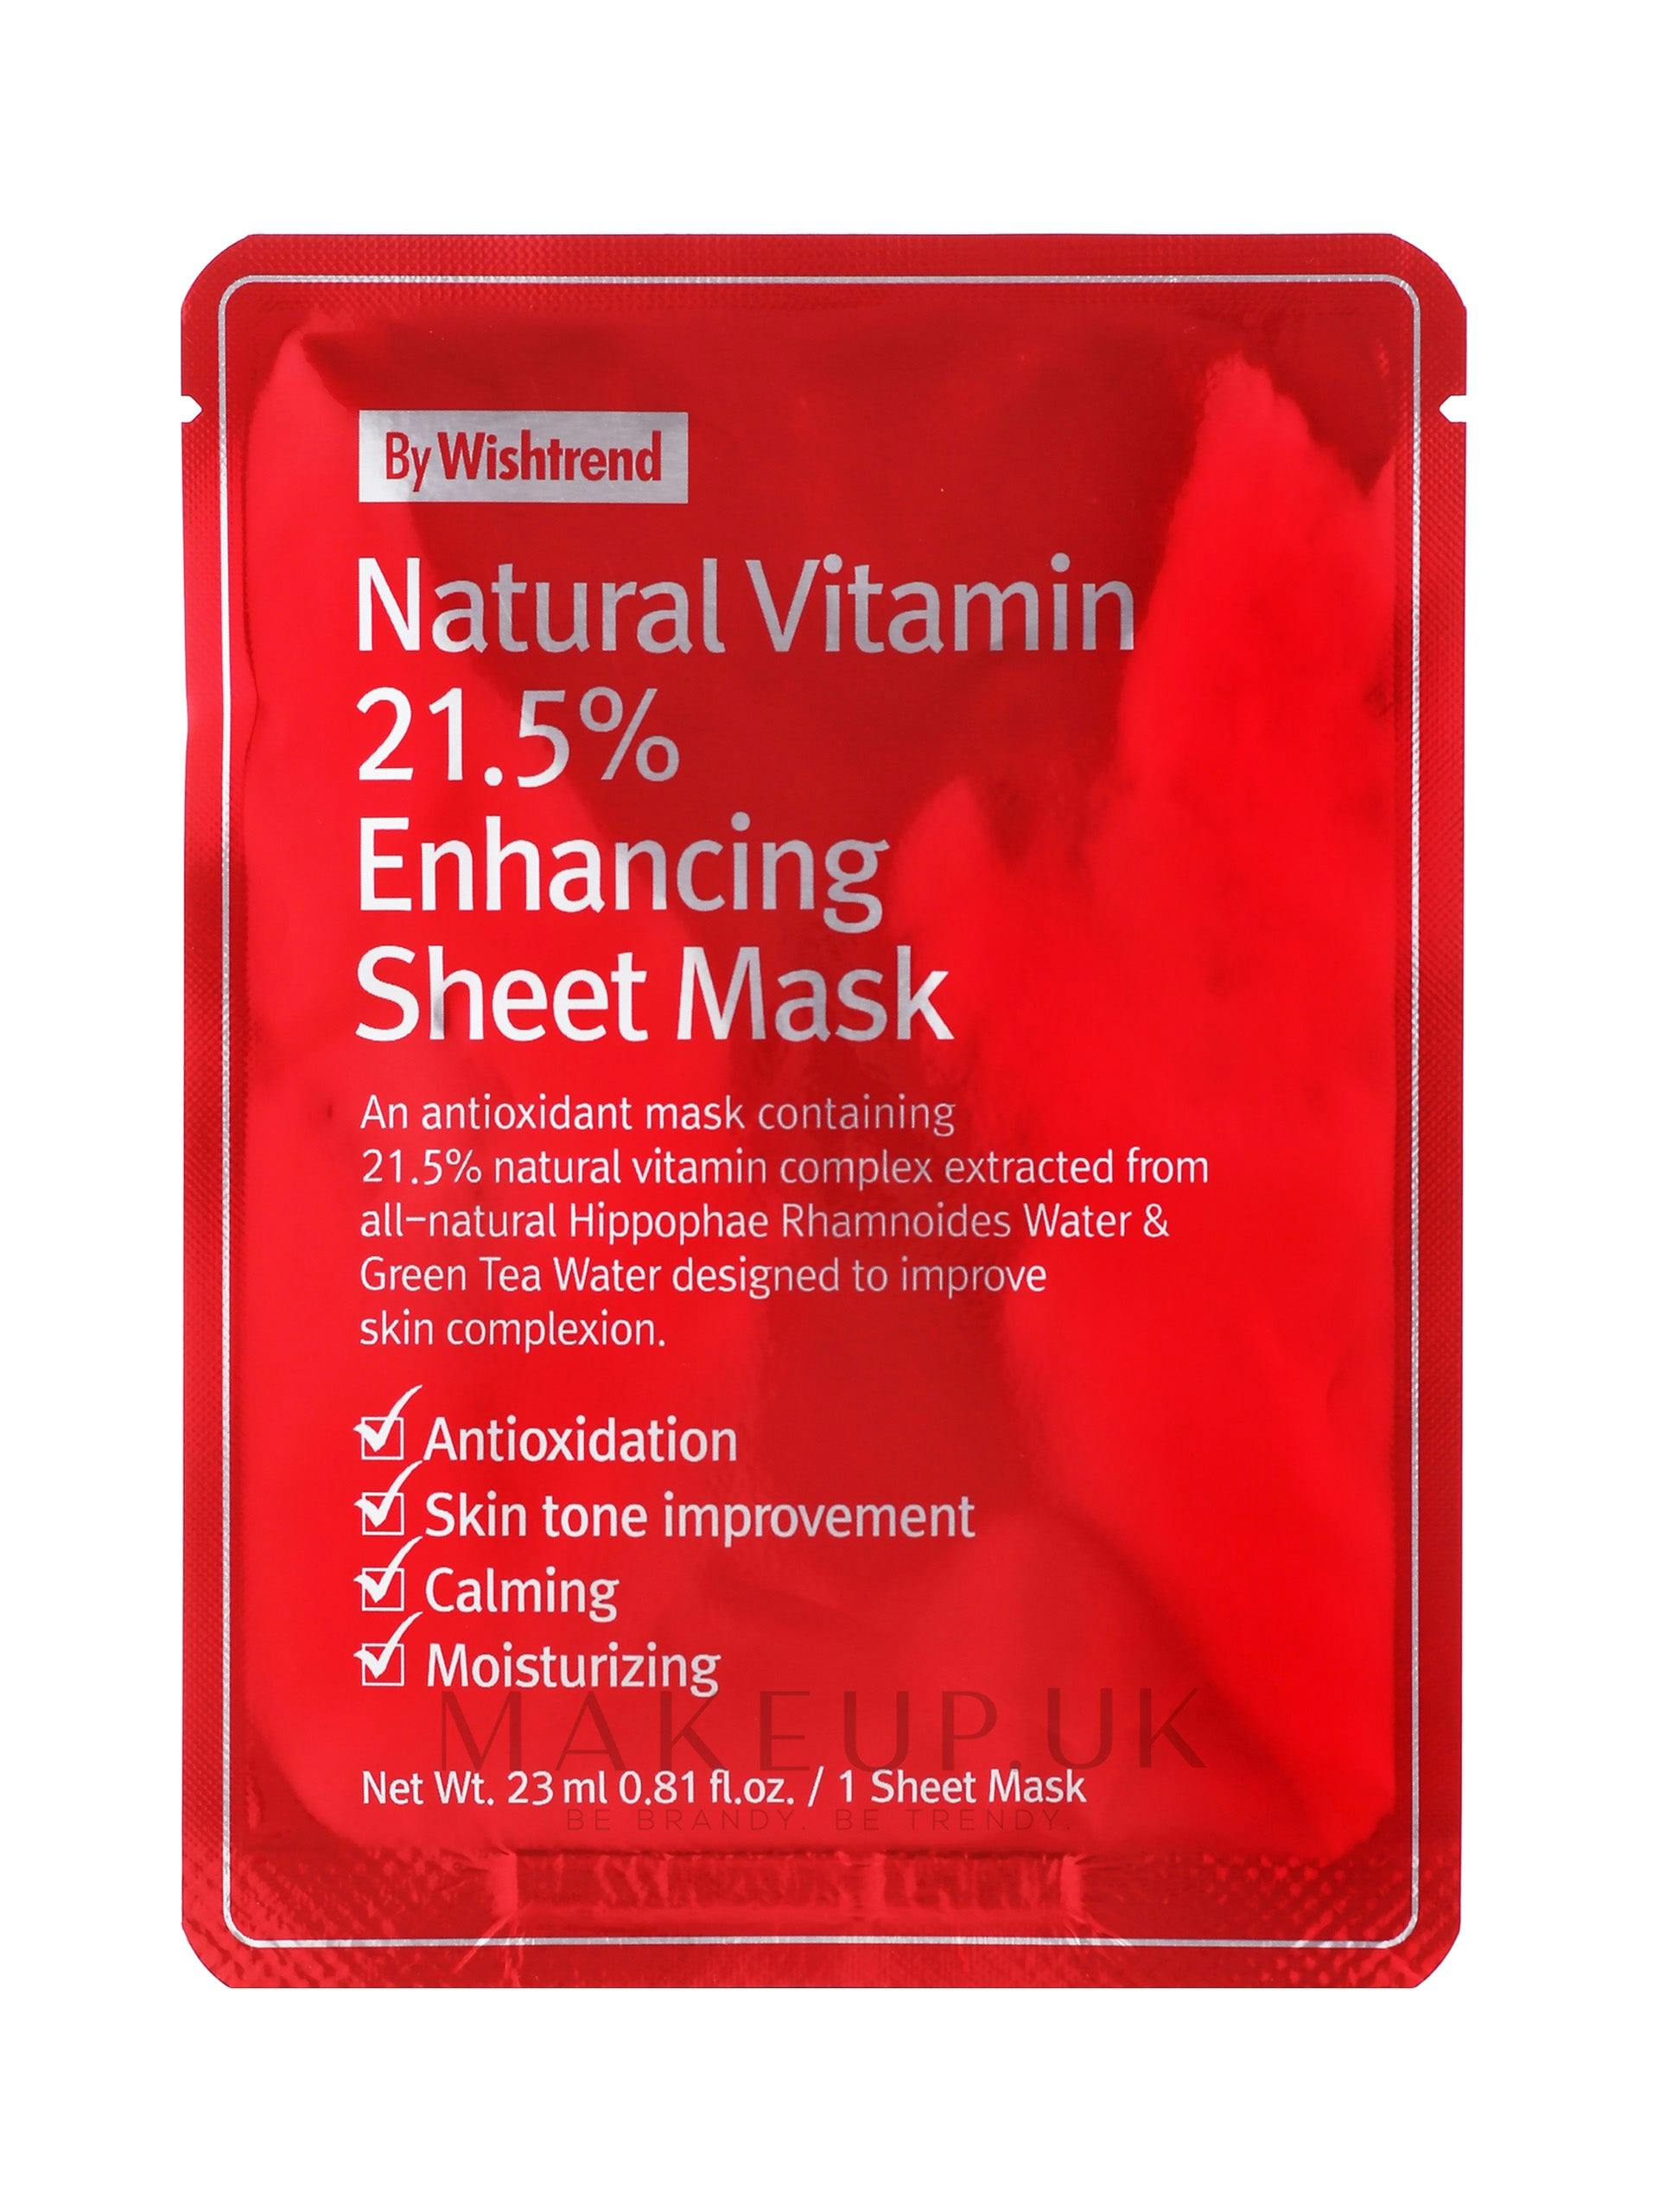 Enhancing sheet mask